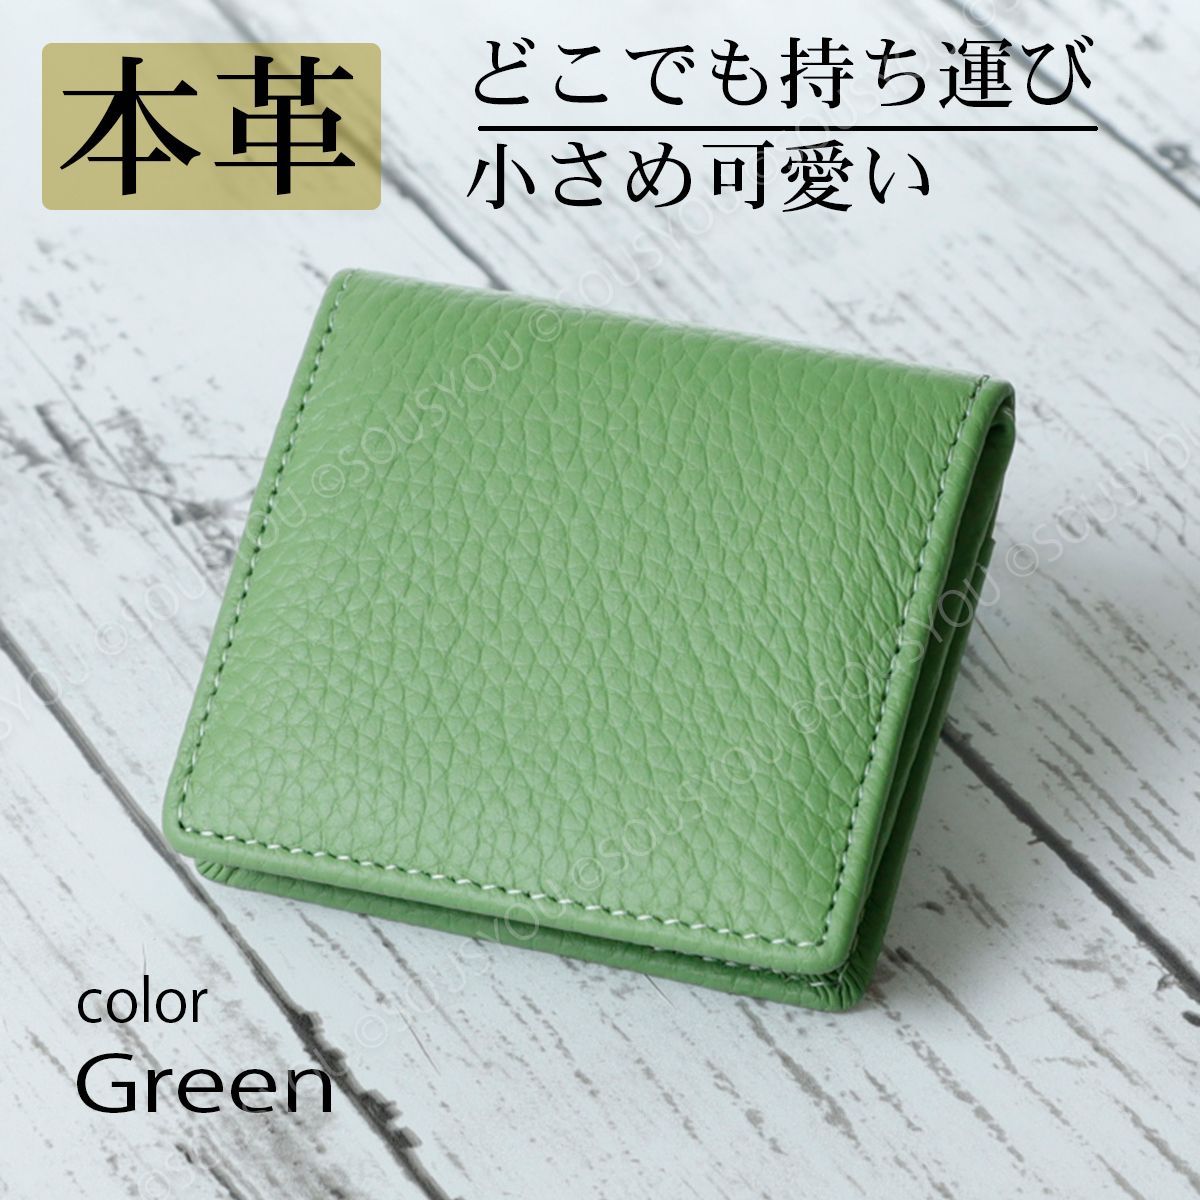 新品 財布 コインケース ミニ 緑 マルチカード かわいい 通販